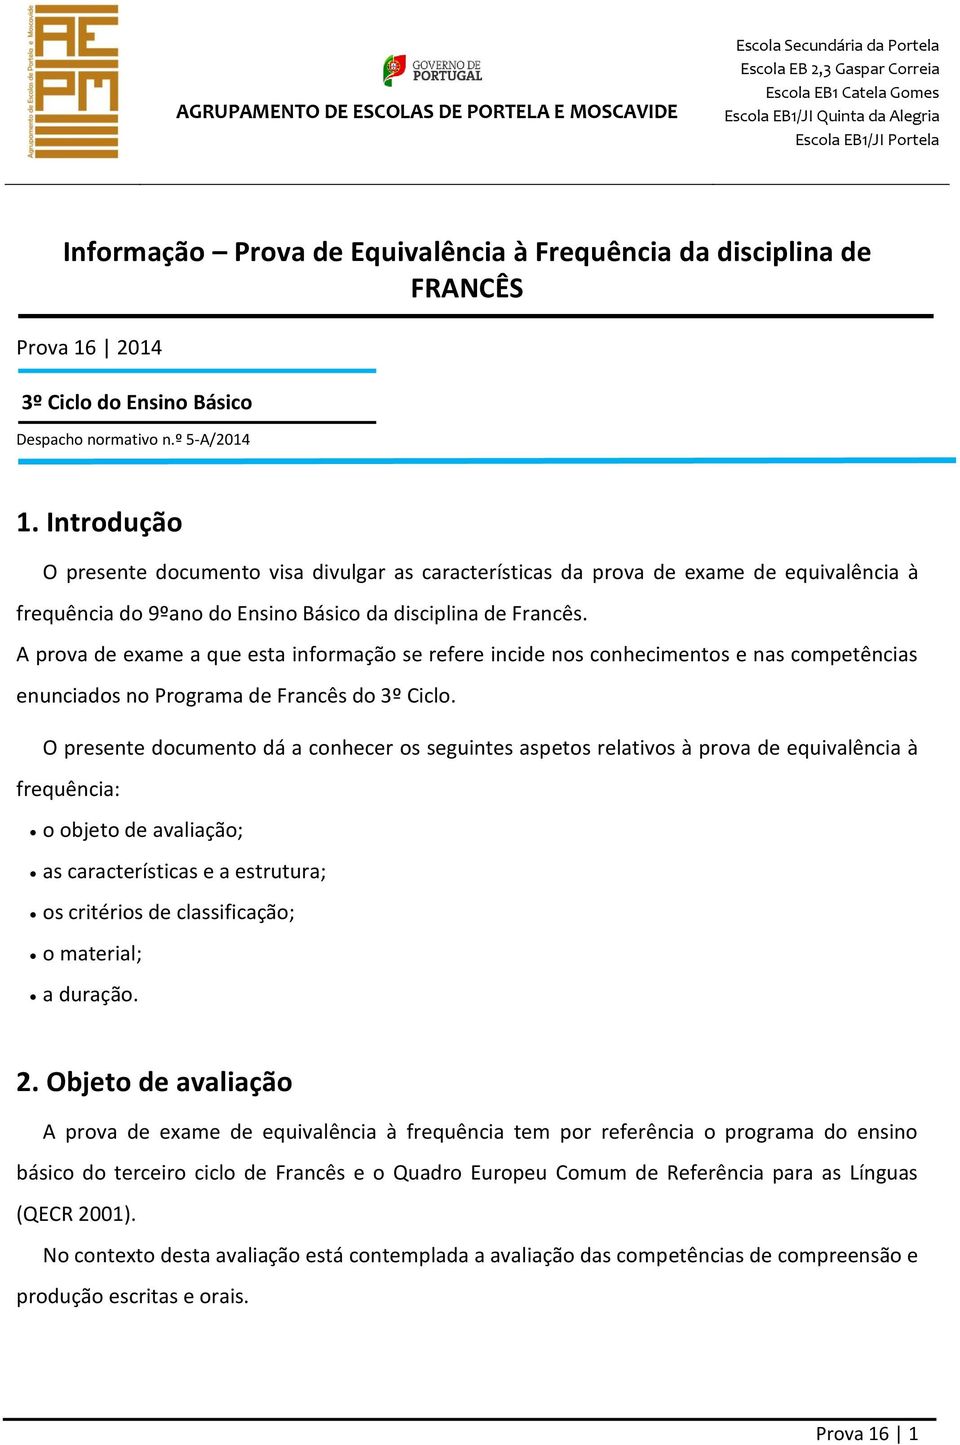 A prova de exame a que esta informação se refere incide nos conhecimentos e nas competências enunciados no Programa de Francês do 3º Ciclo.